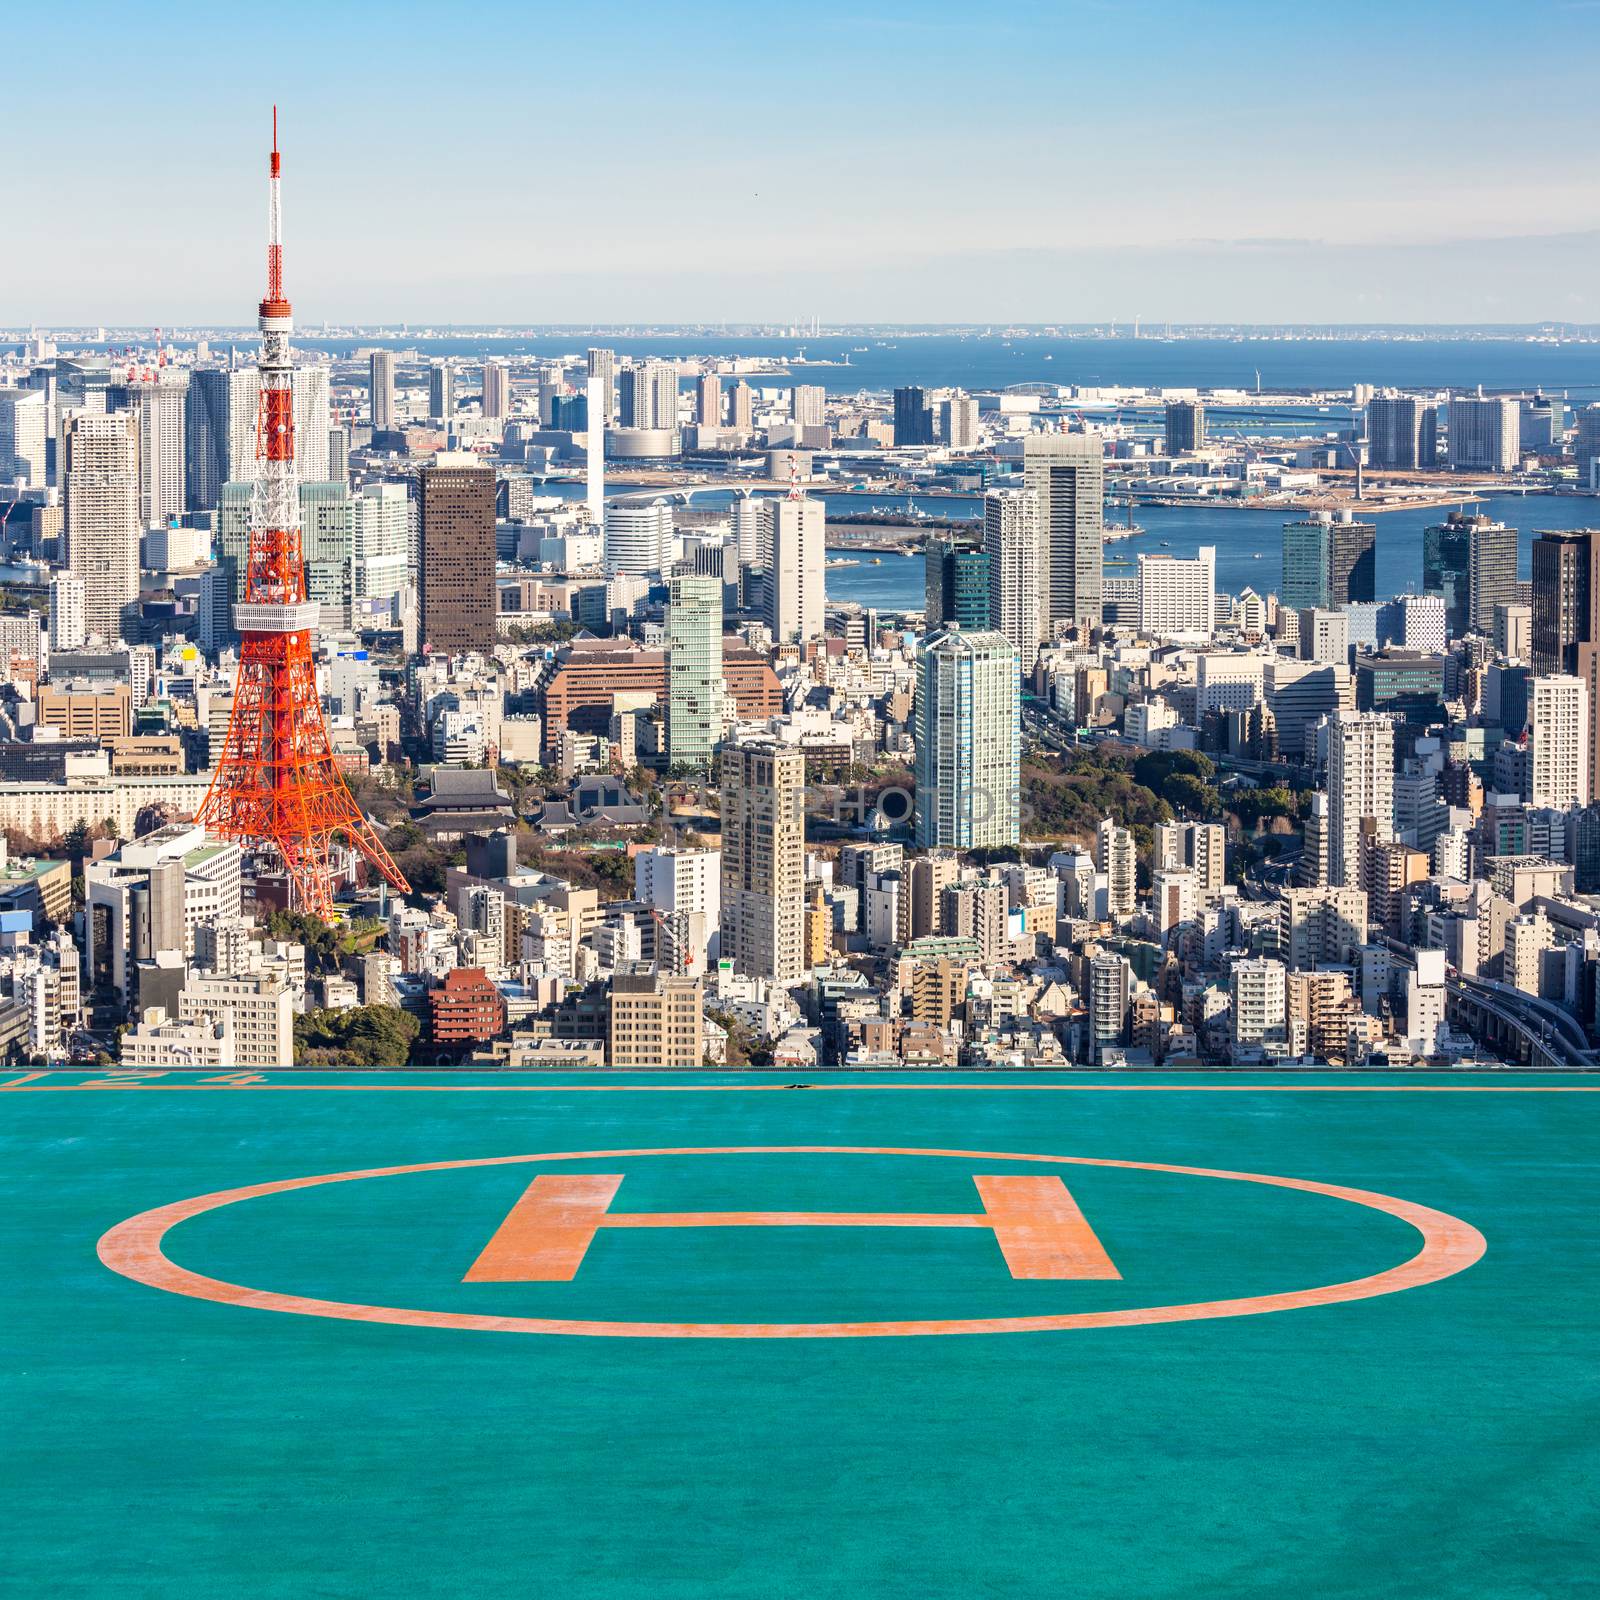 Helipad Tokyo Tower, Tokyo Japan by vichie81